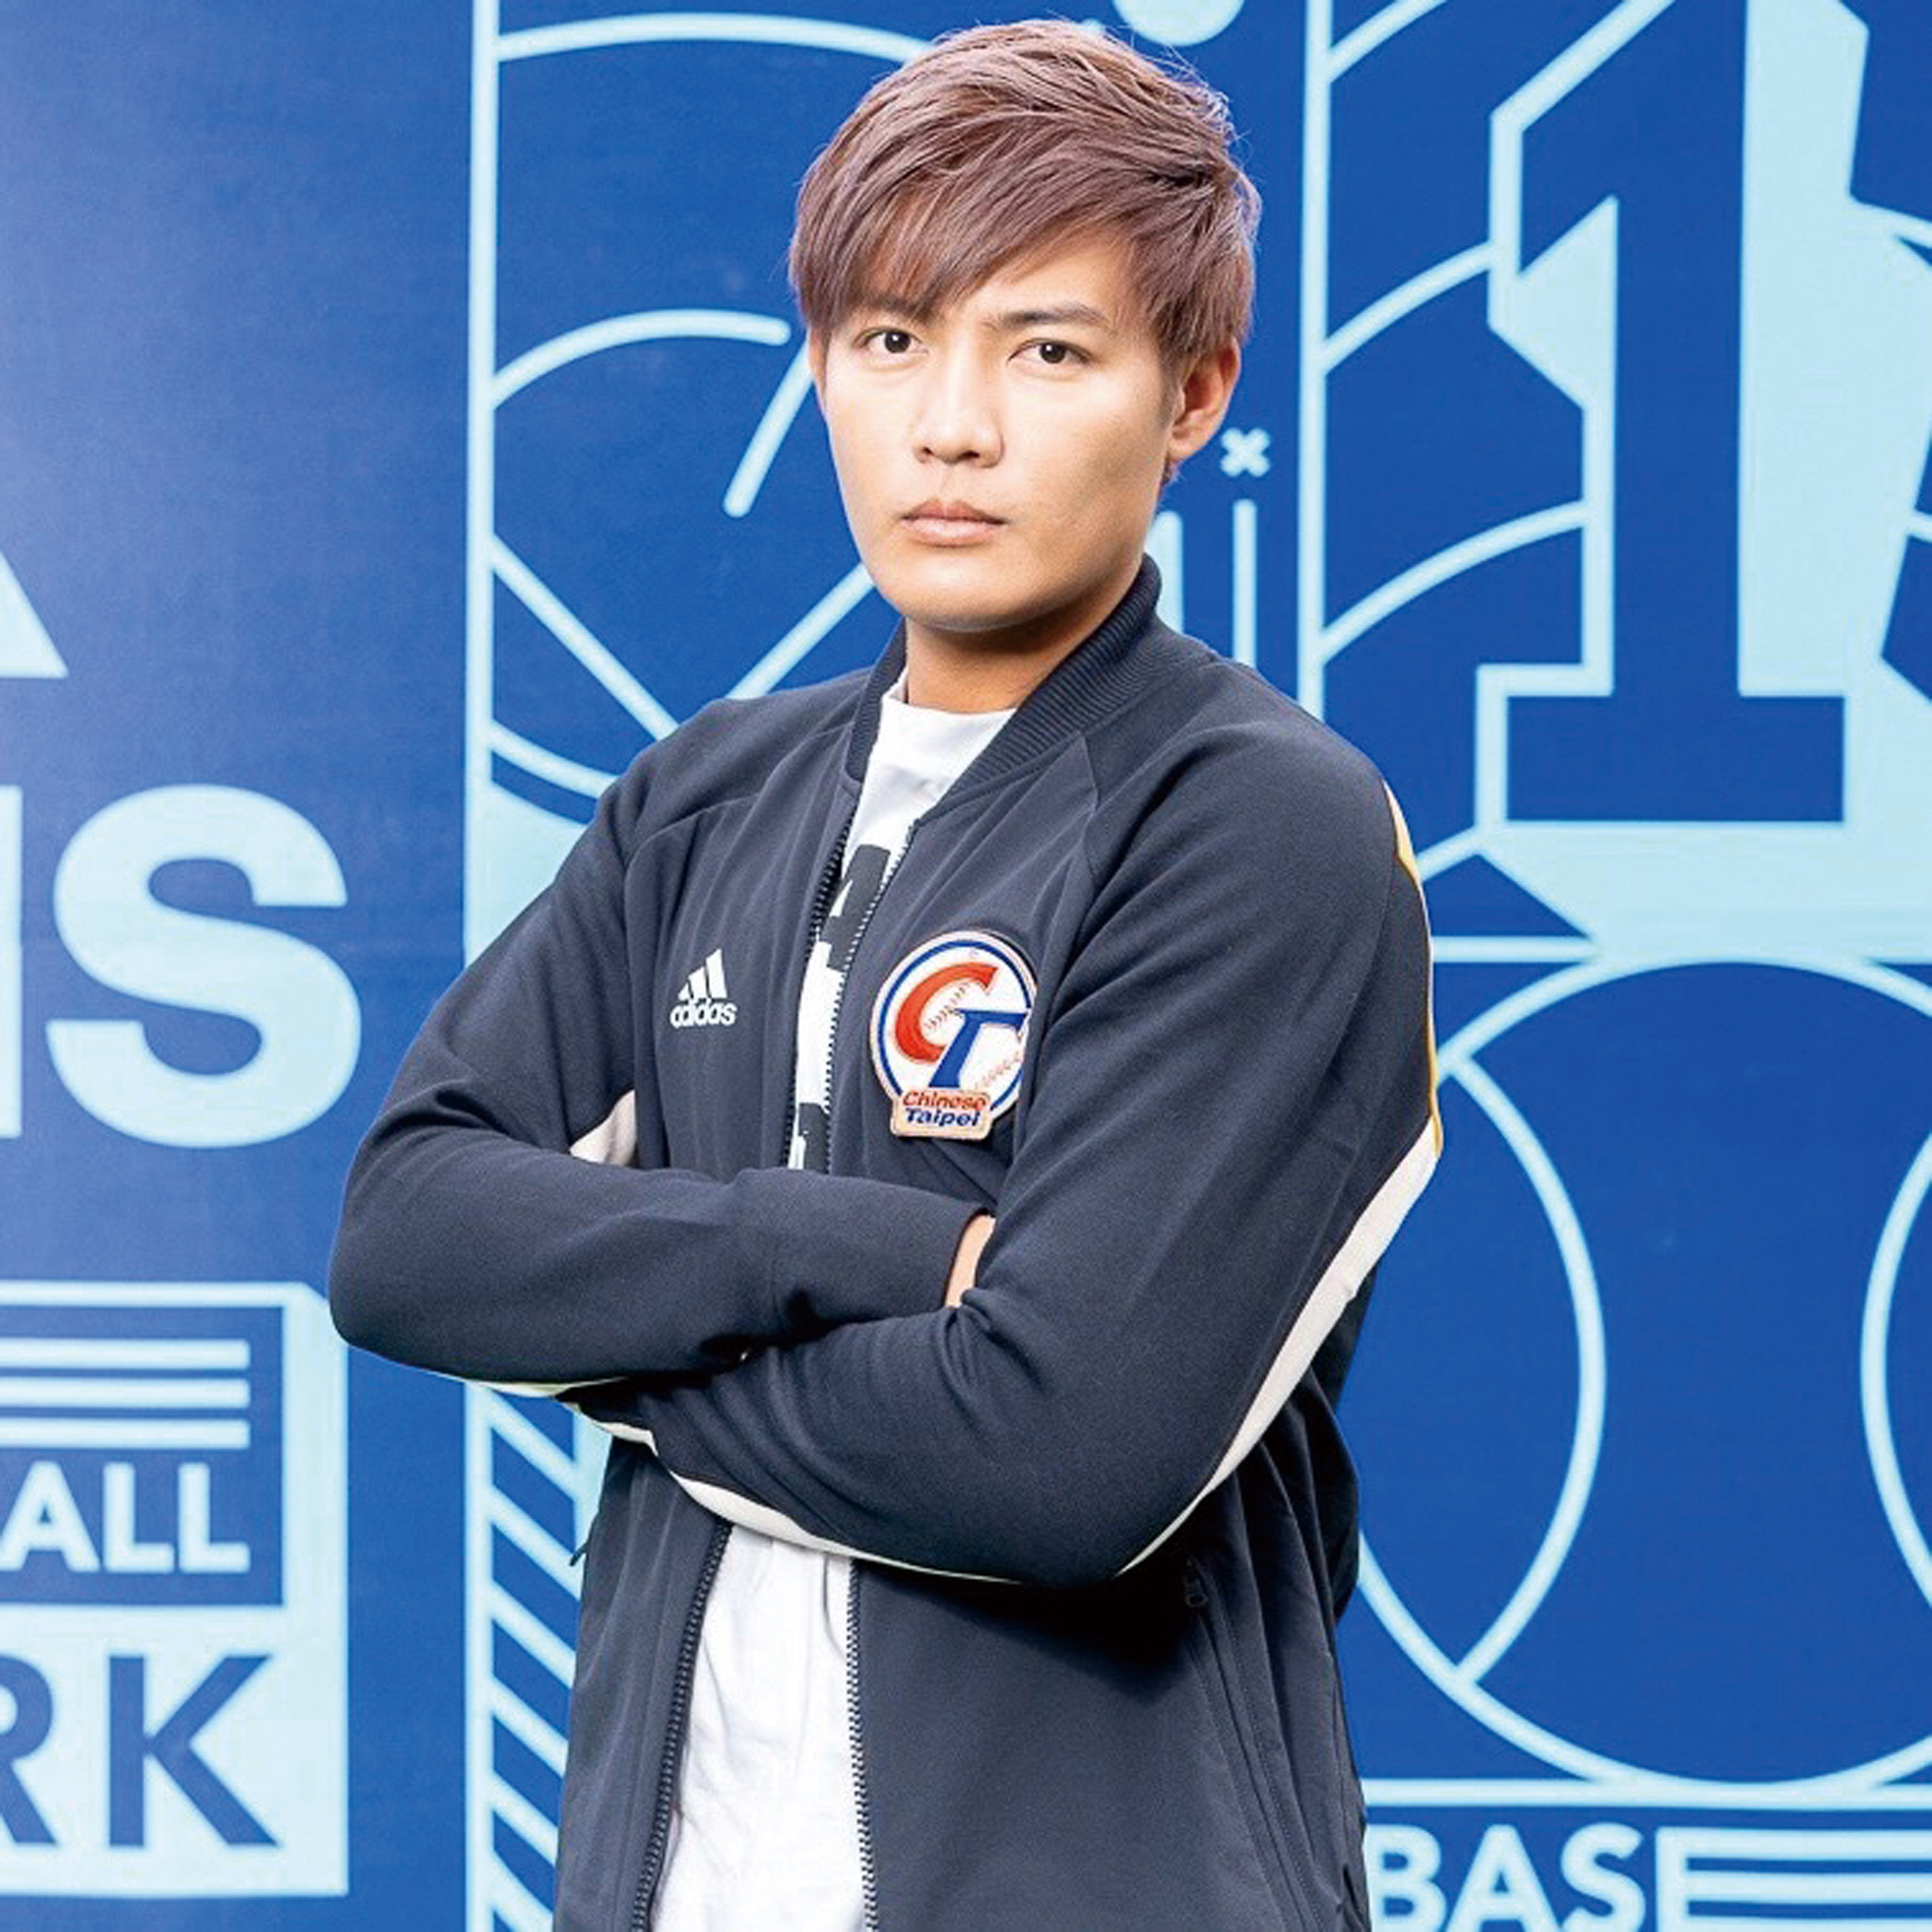 王維中是台灣第十一位登上美國職棒大聯盟的選手。